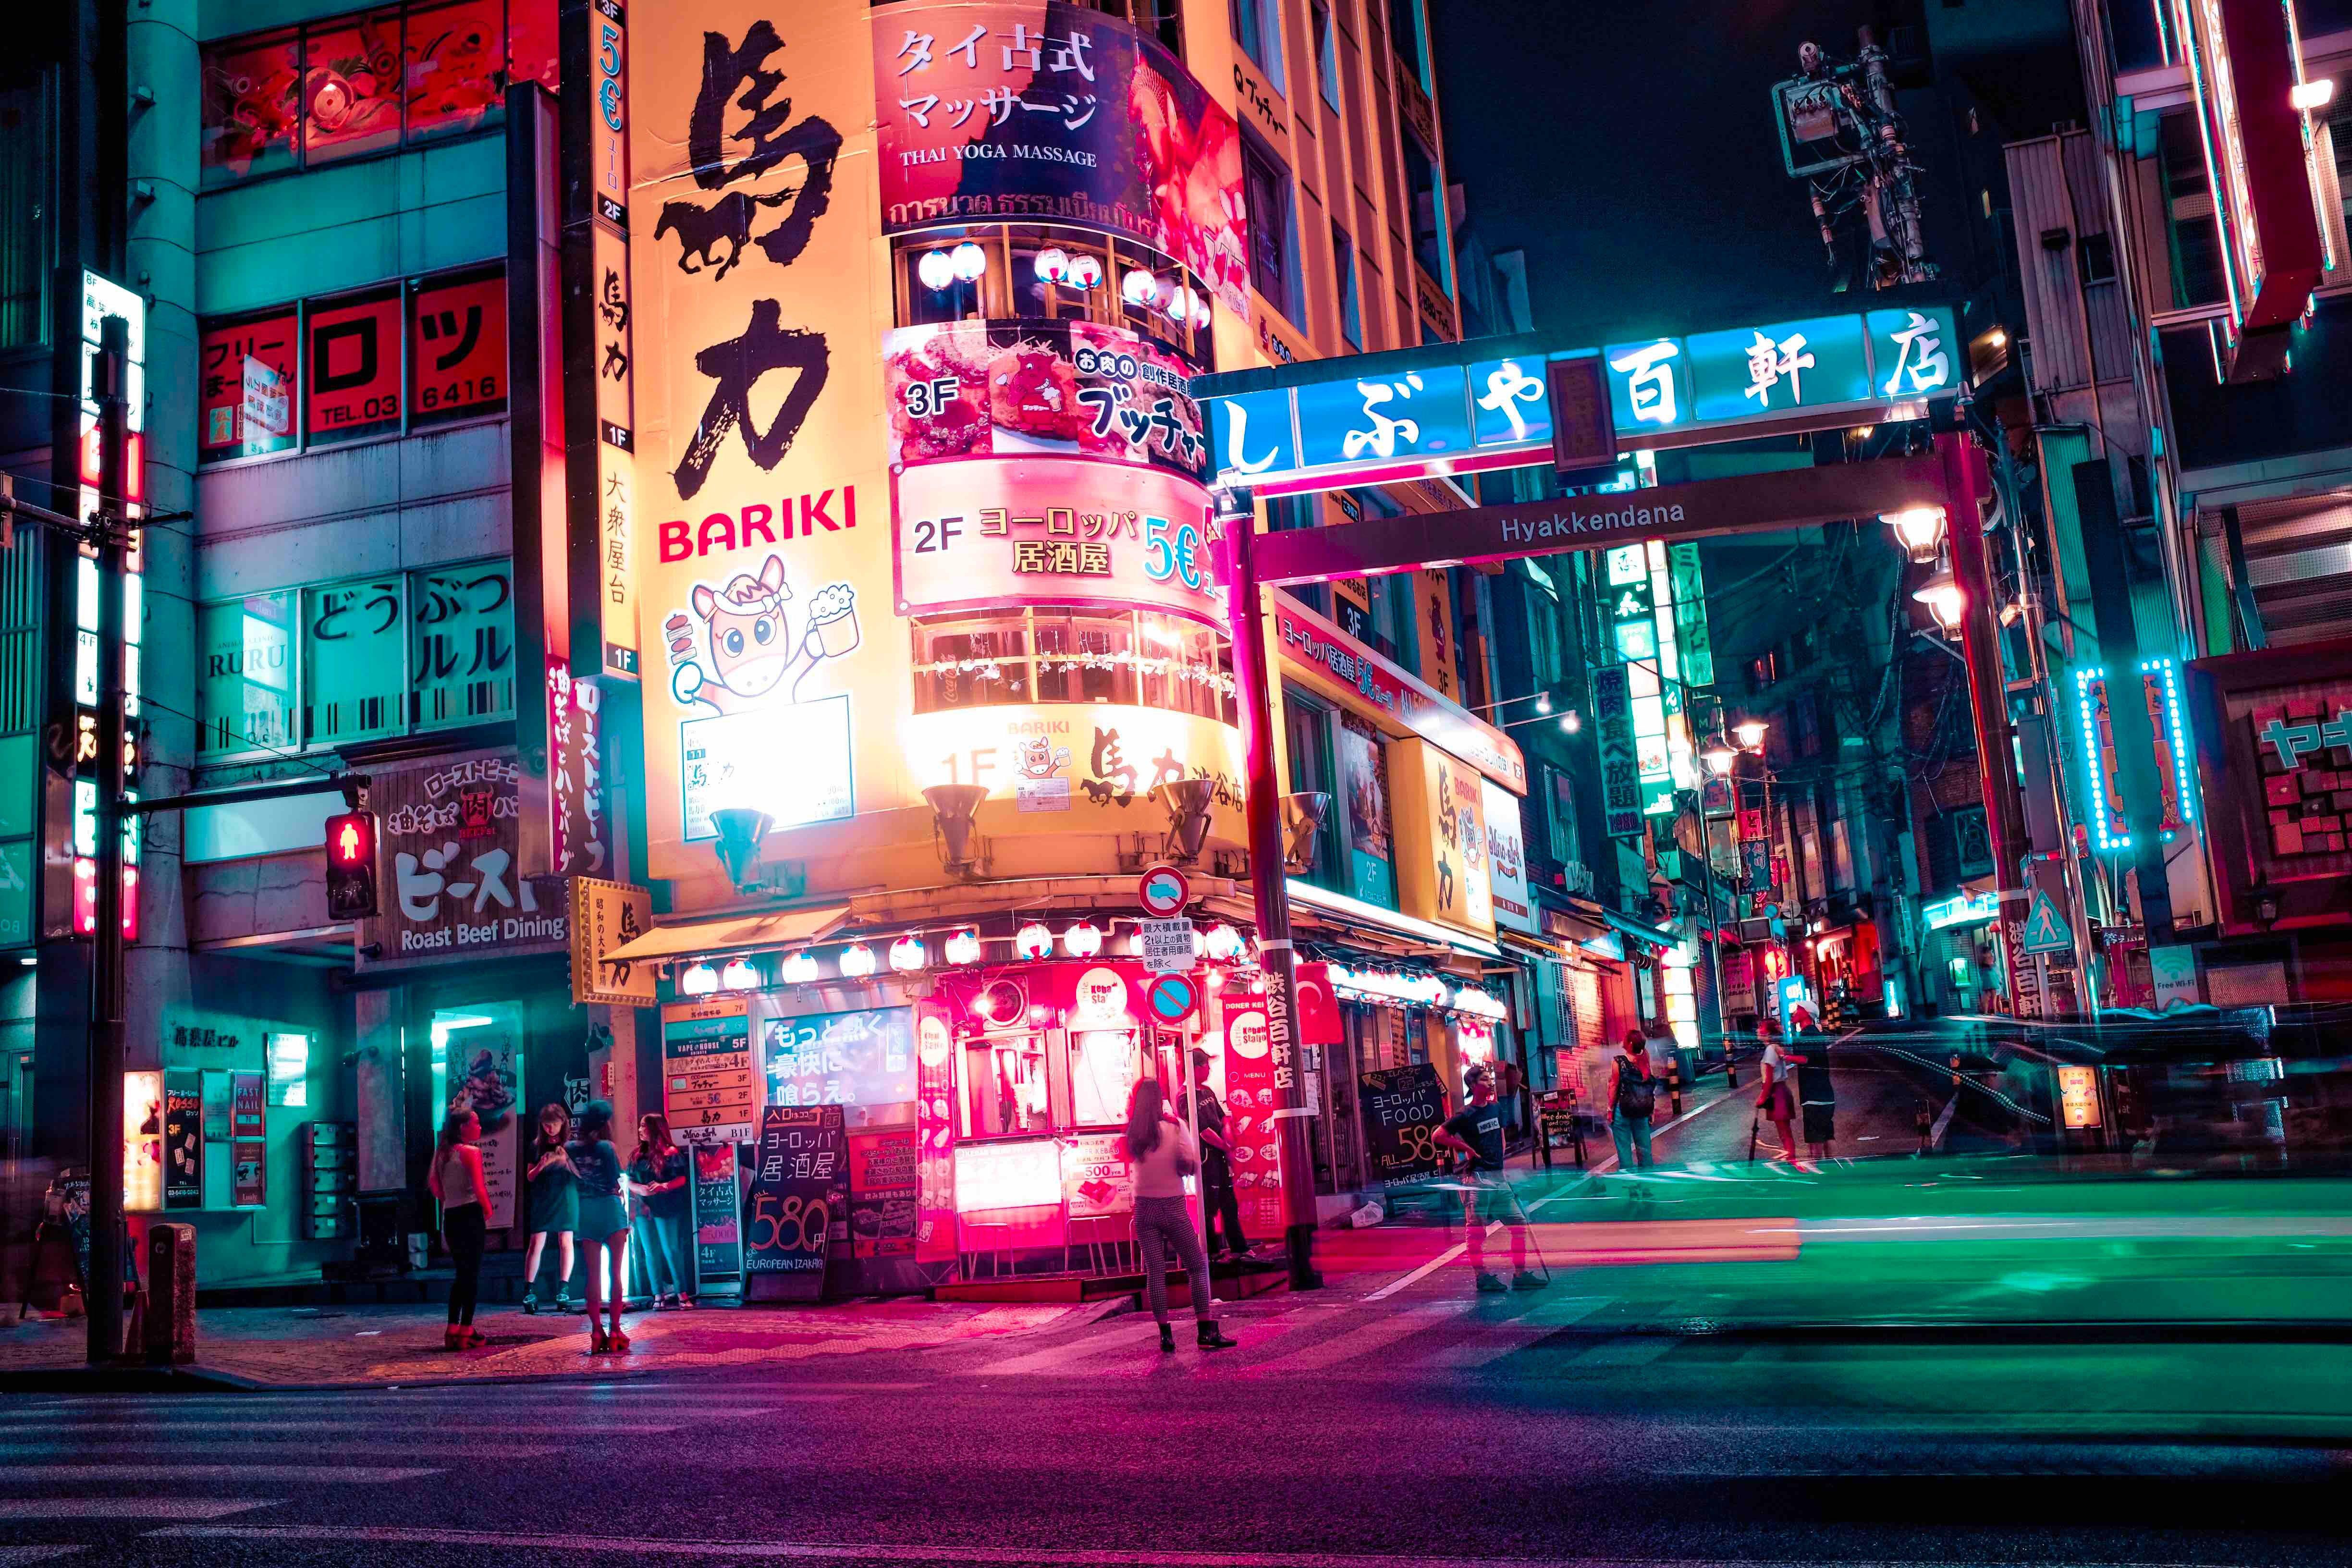 Tokyo Neon Wallpapers - Top Free Tokyo Neon Backgrounds ...